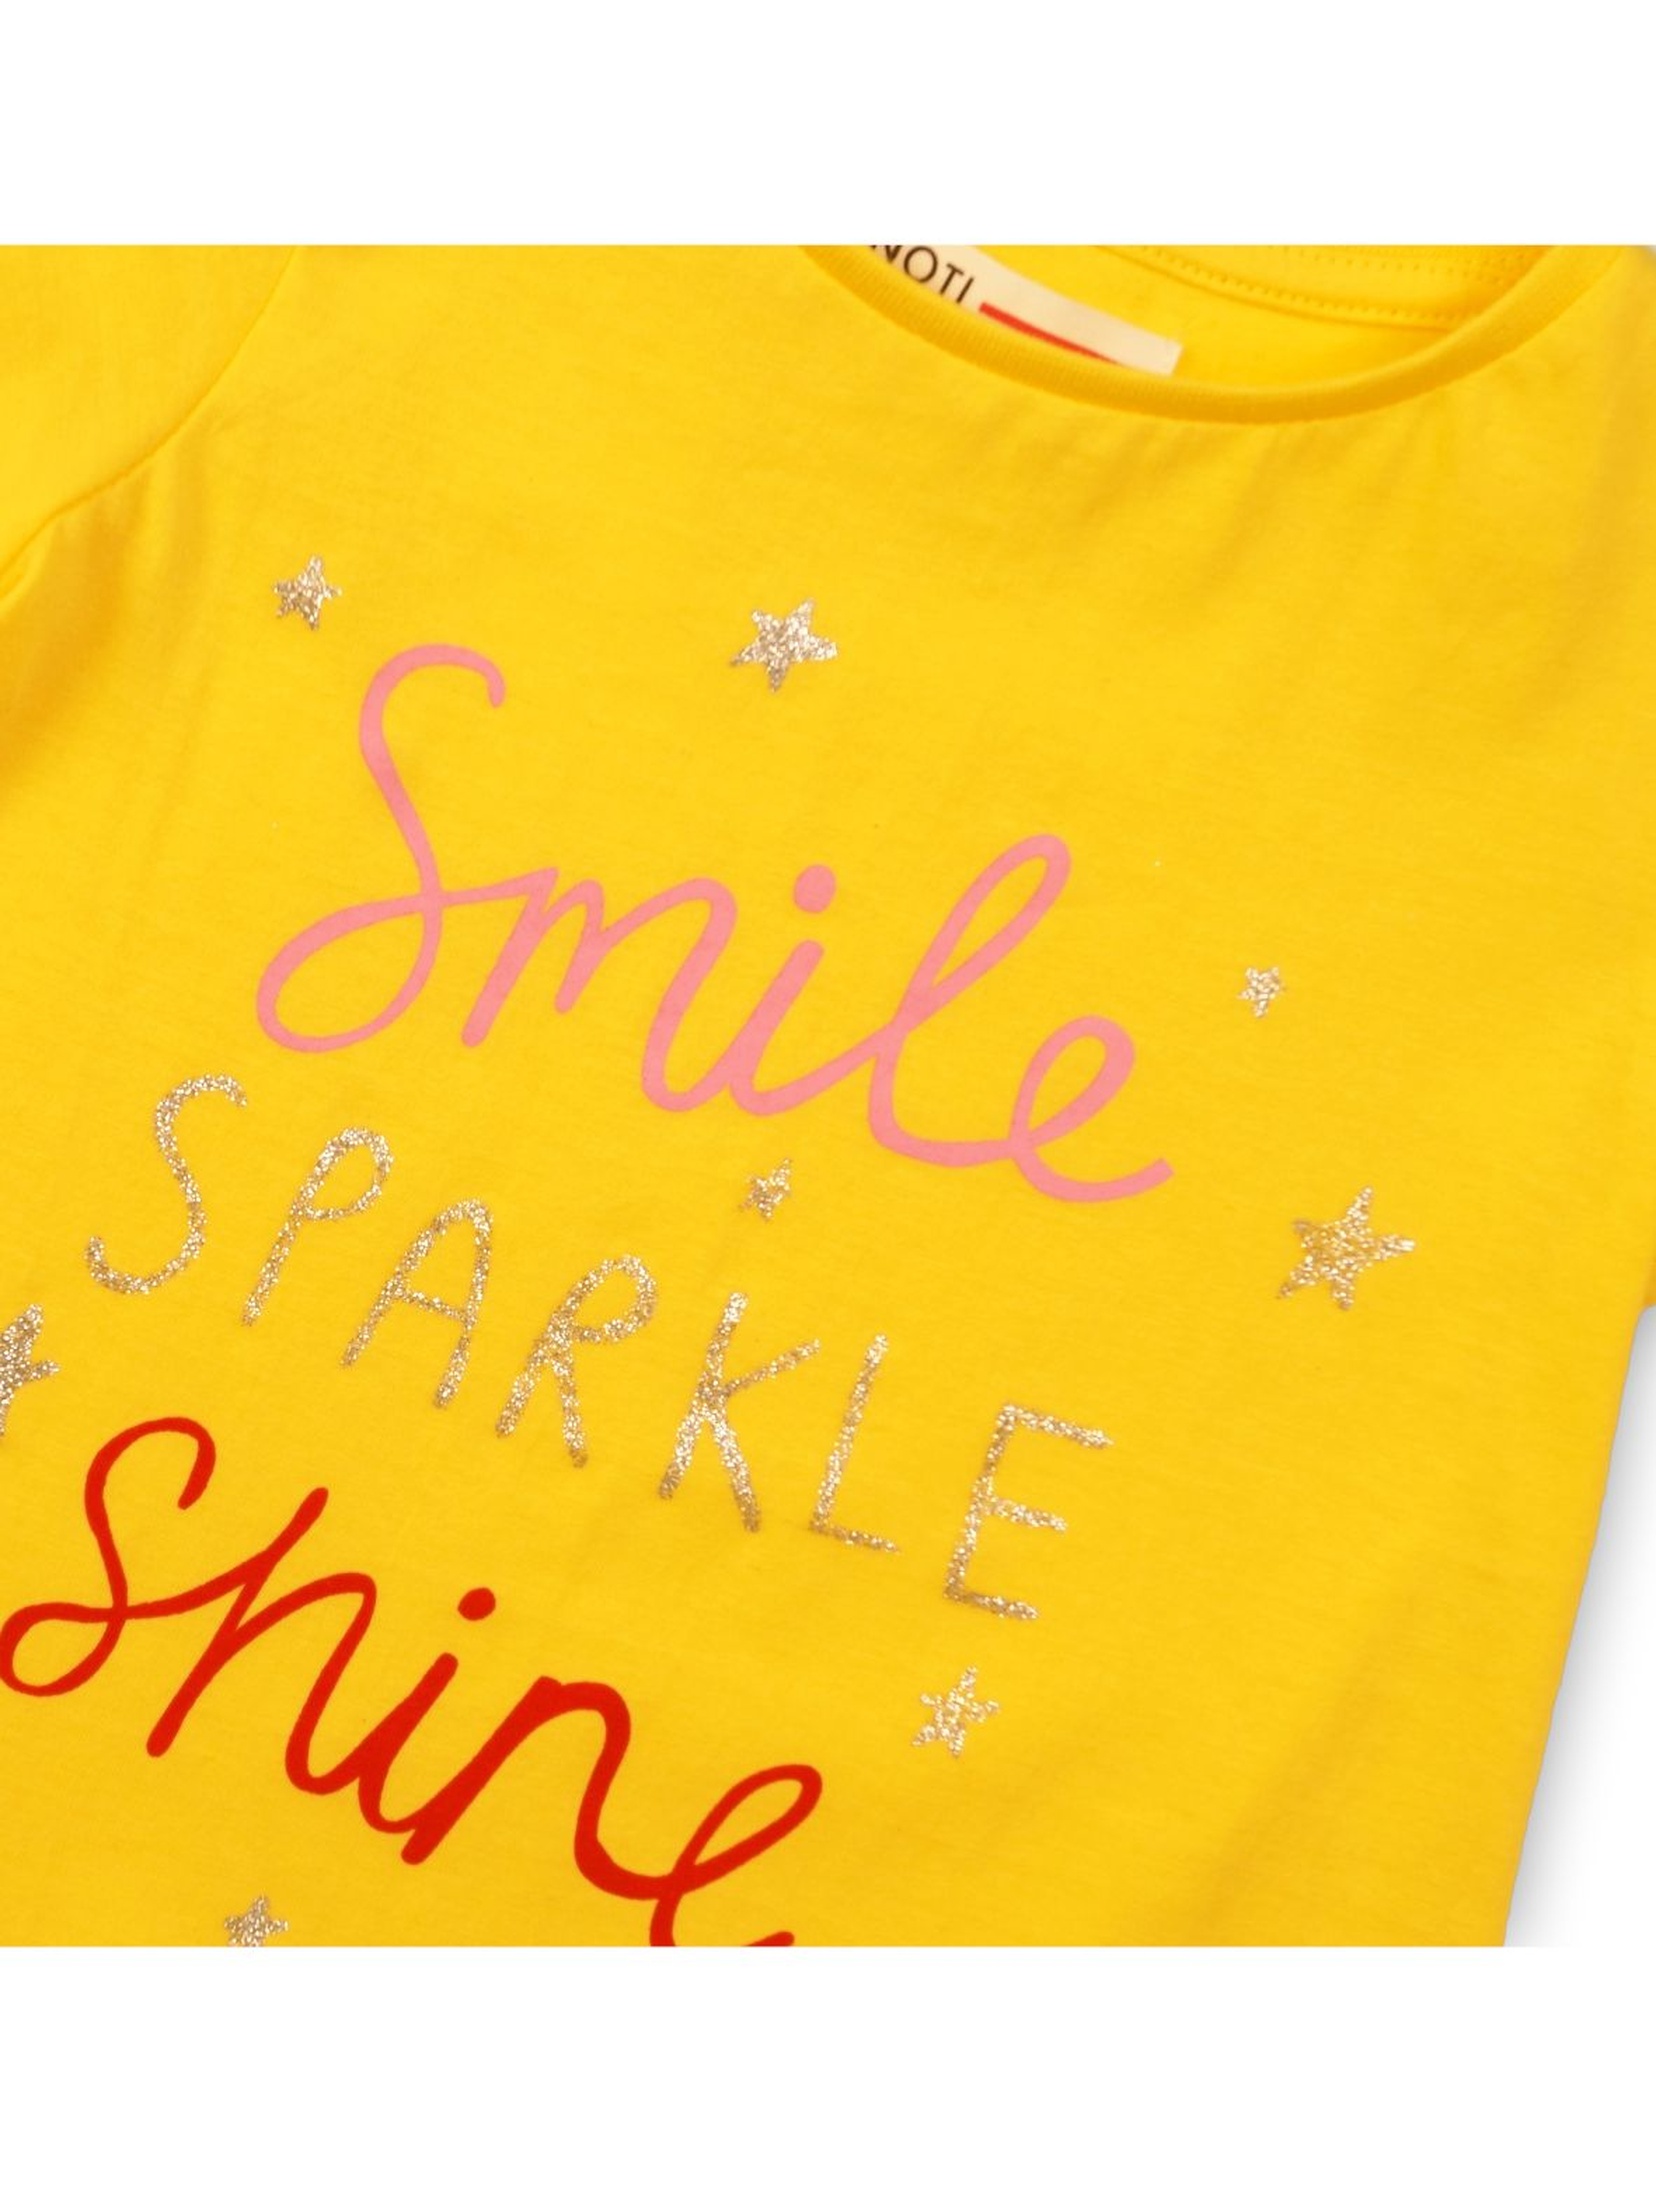 T-Shirt niemowlęcy żółty z napisami